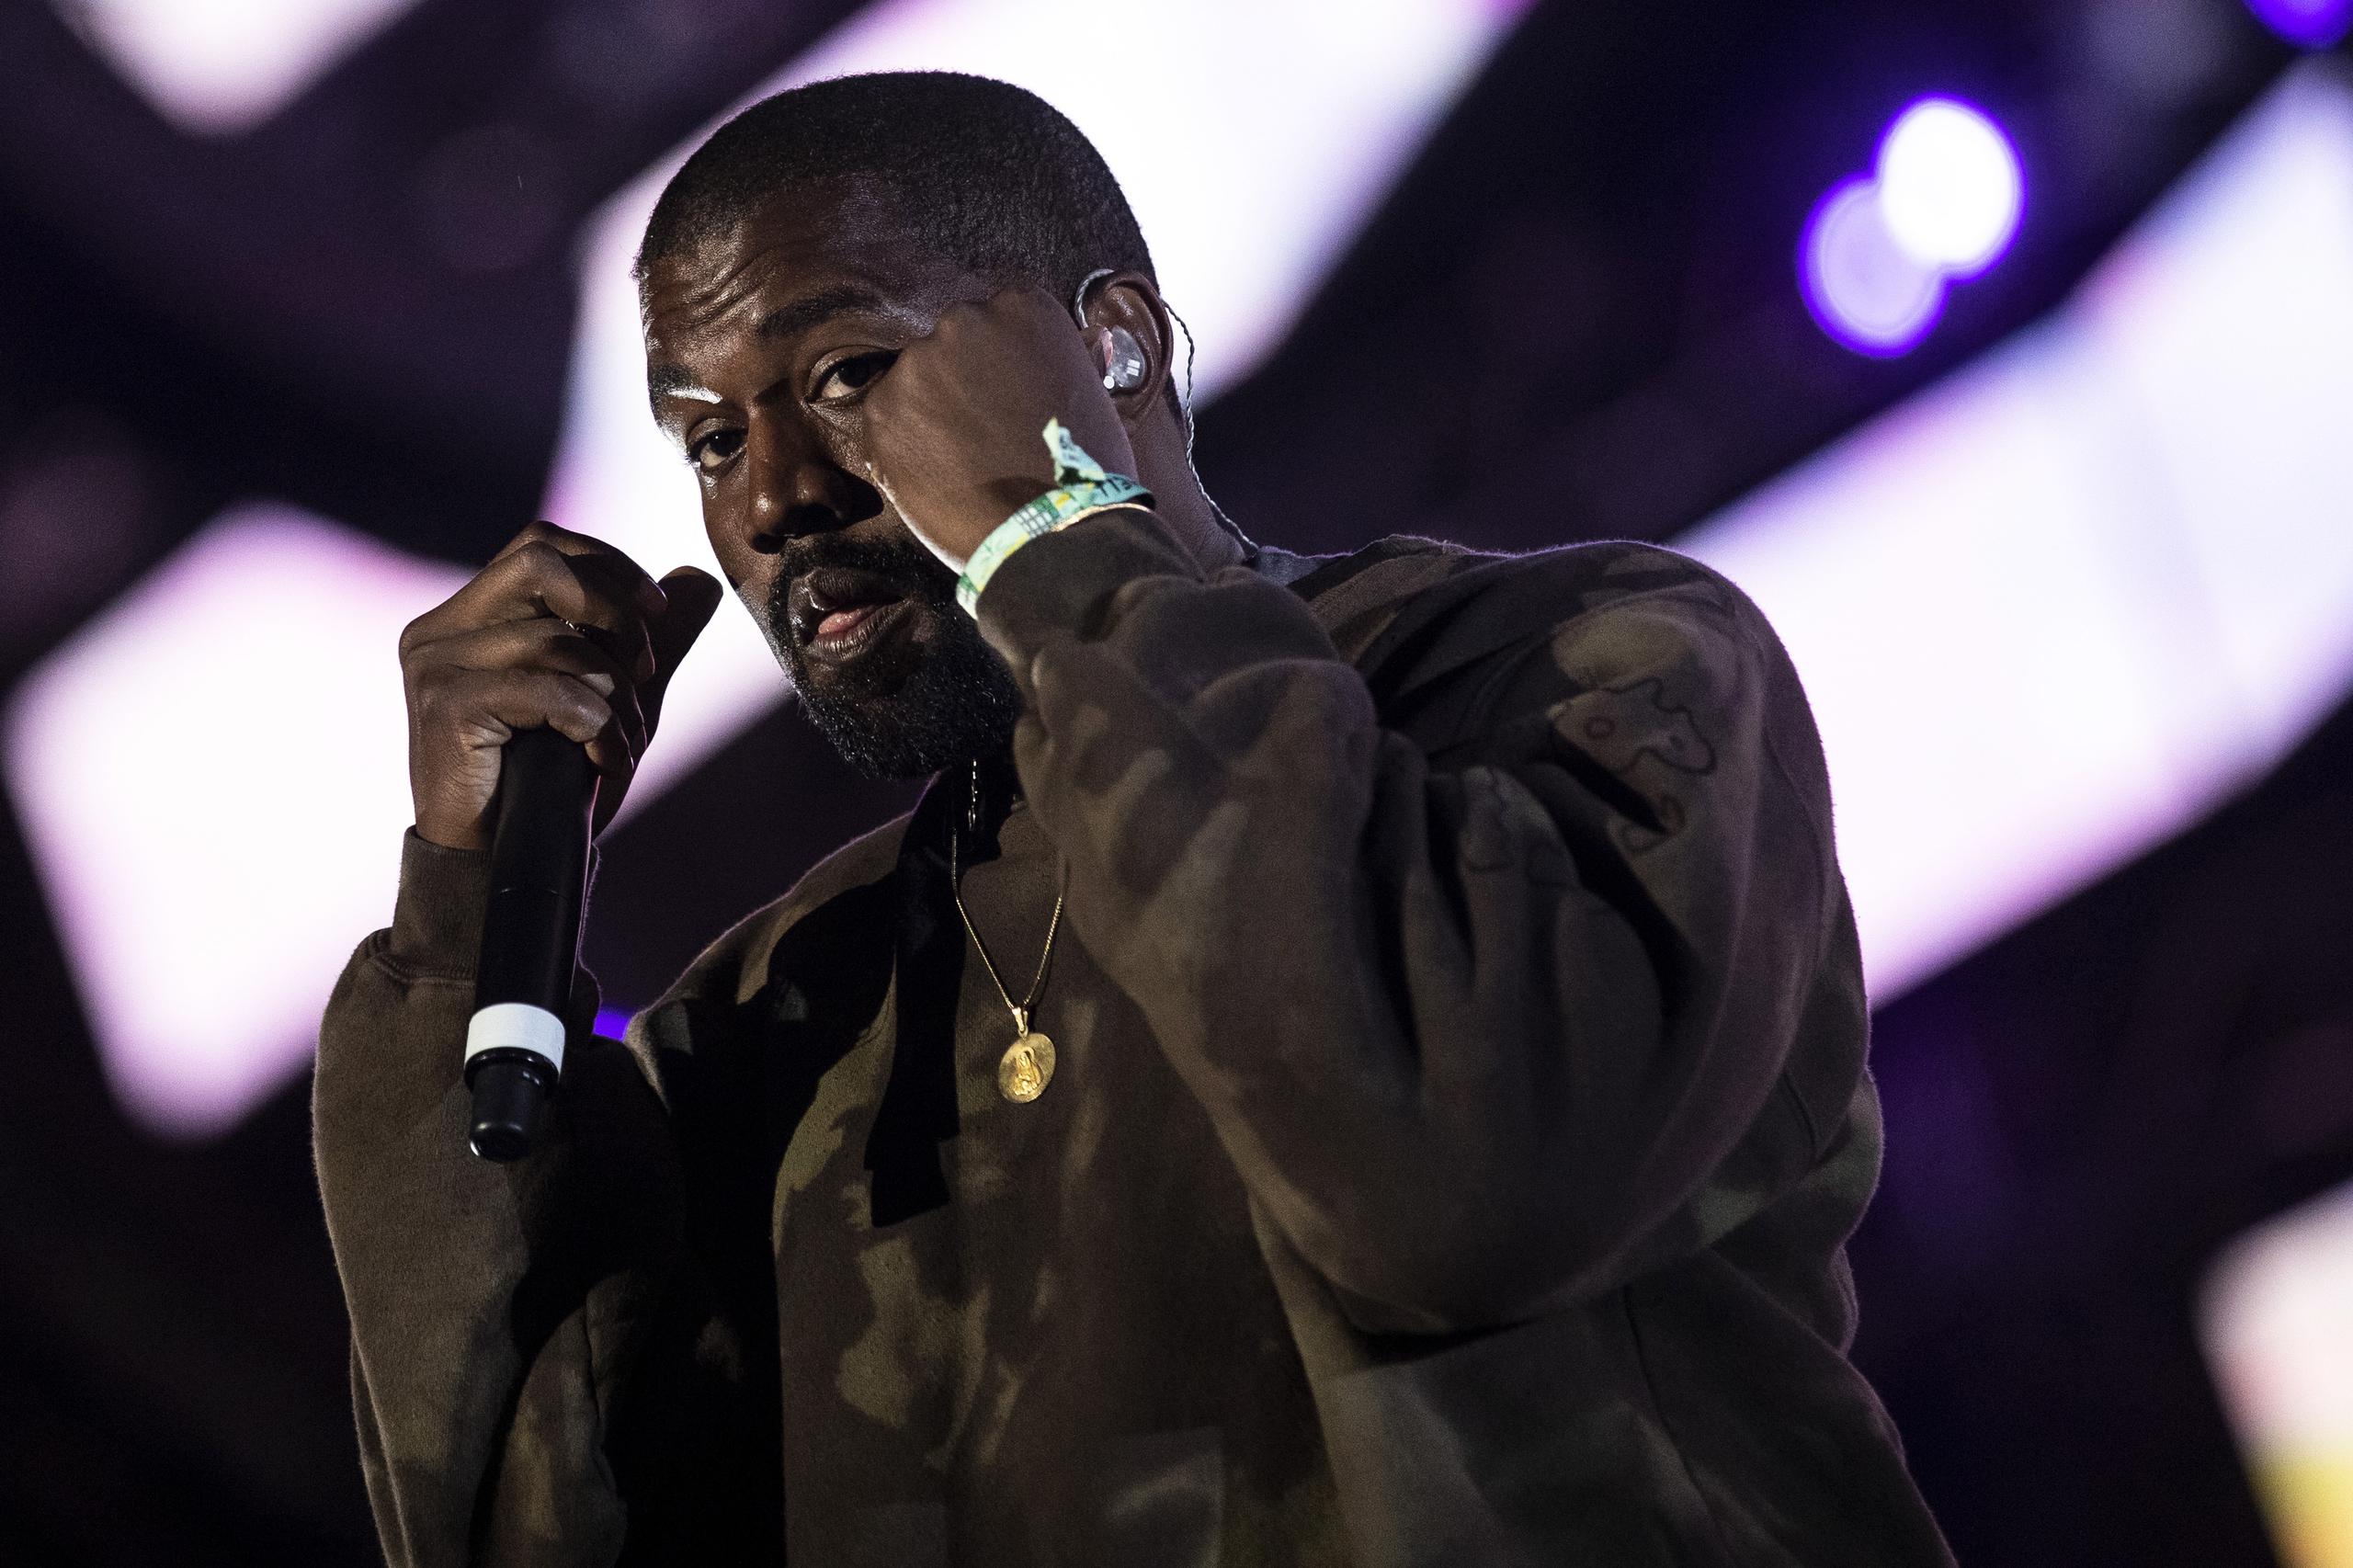 El rapero estadounidense Kanye West sigue siendo eje de la polémica con sus mensajes en las redes sociales.